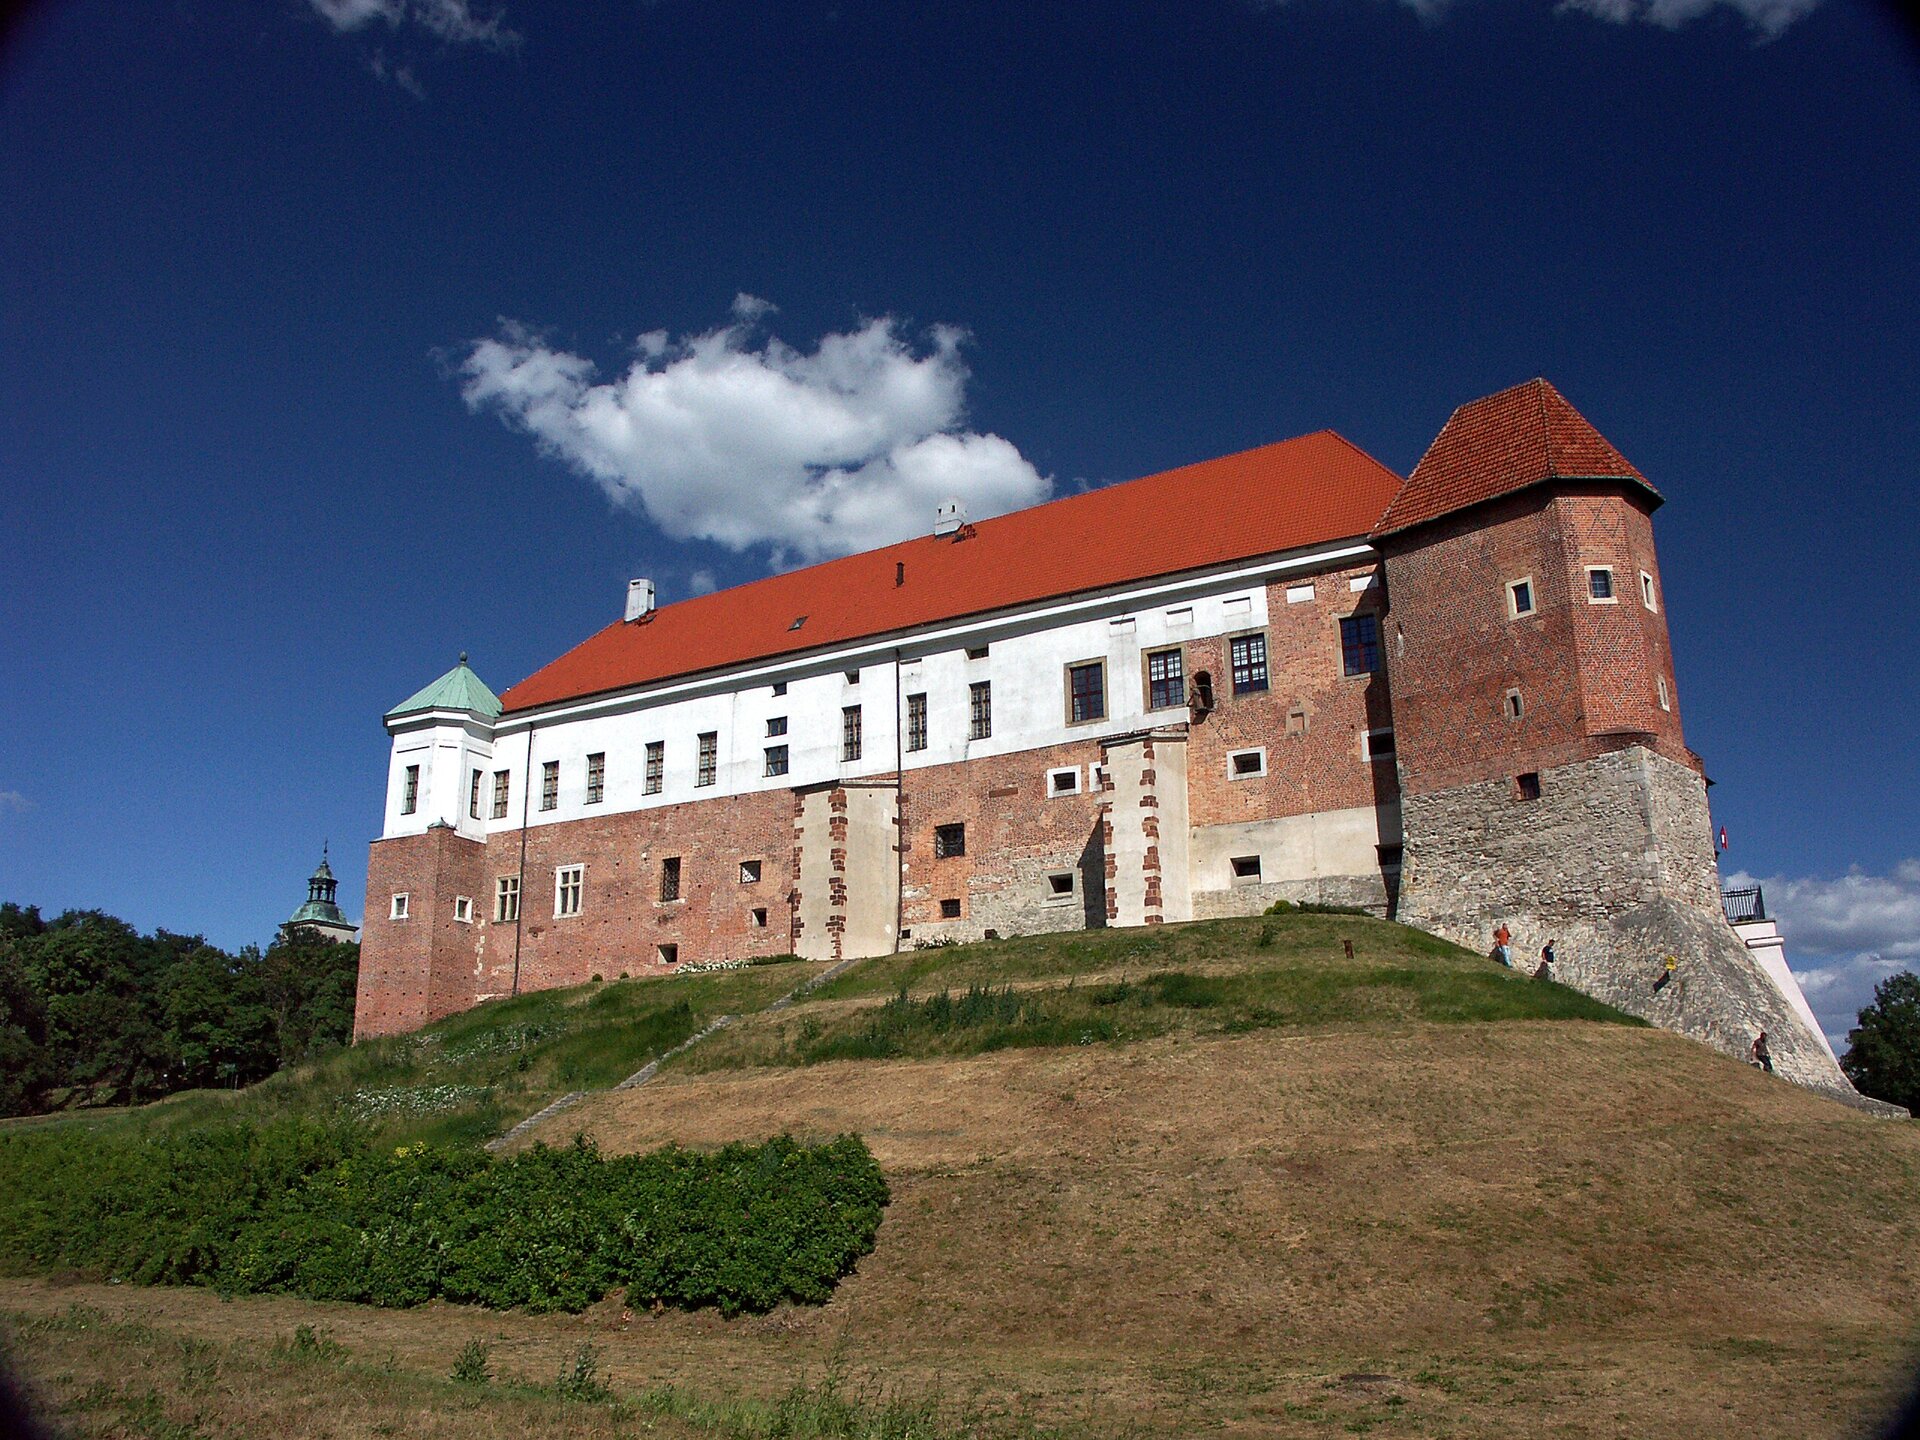 Zamek królewski w Sandomierzu. Przebudowany przez Benedykta Sandomierzanina. Zamek królewski w Sandomierzu. Przebudowany przez Benedykta Sandomierzanina. Źródło: Wikimiedia Commons, licencja: CC BY-SA 3.0.